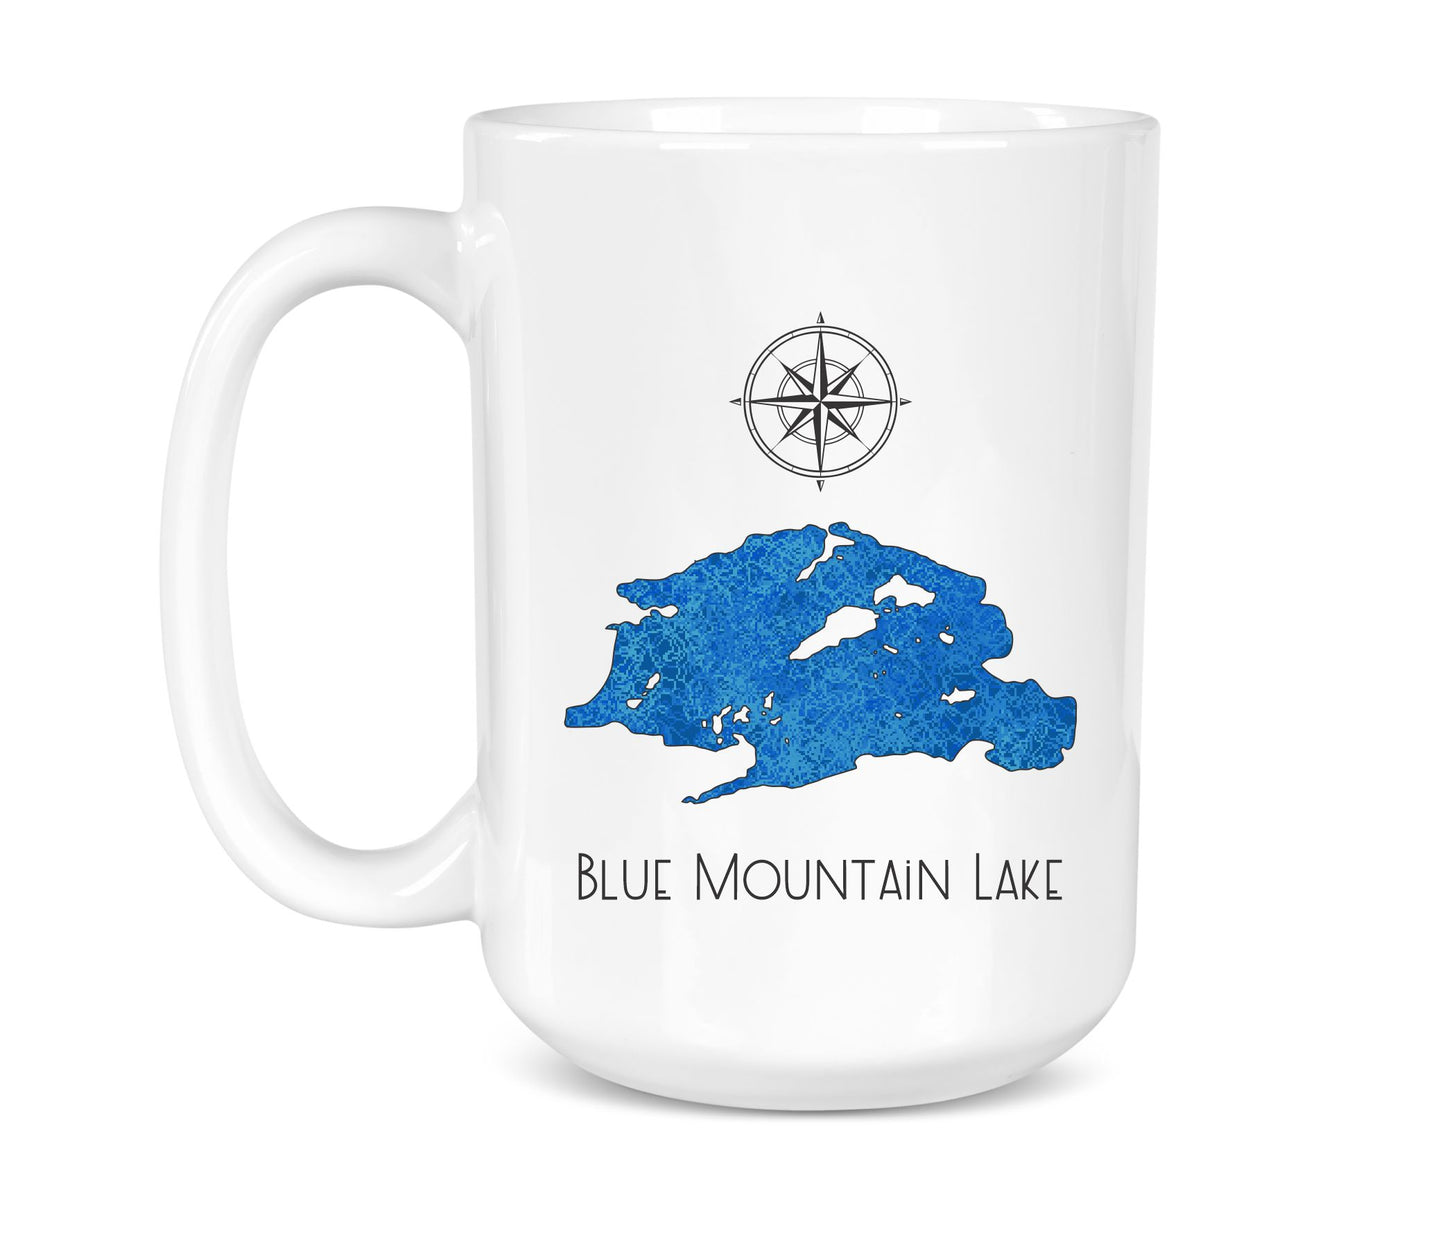 Blue Mountain Lake - 15 oz Ceramic Mug